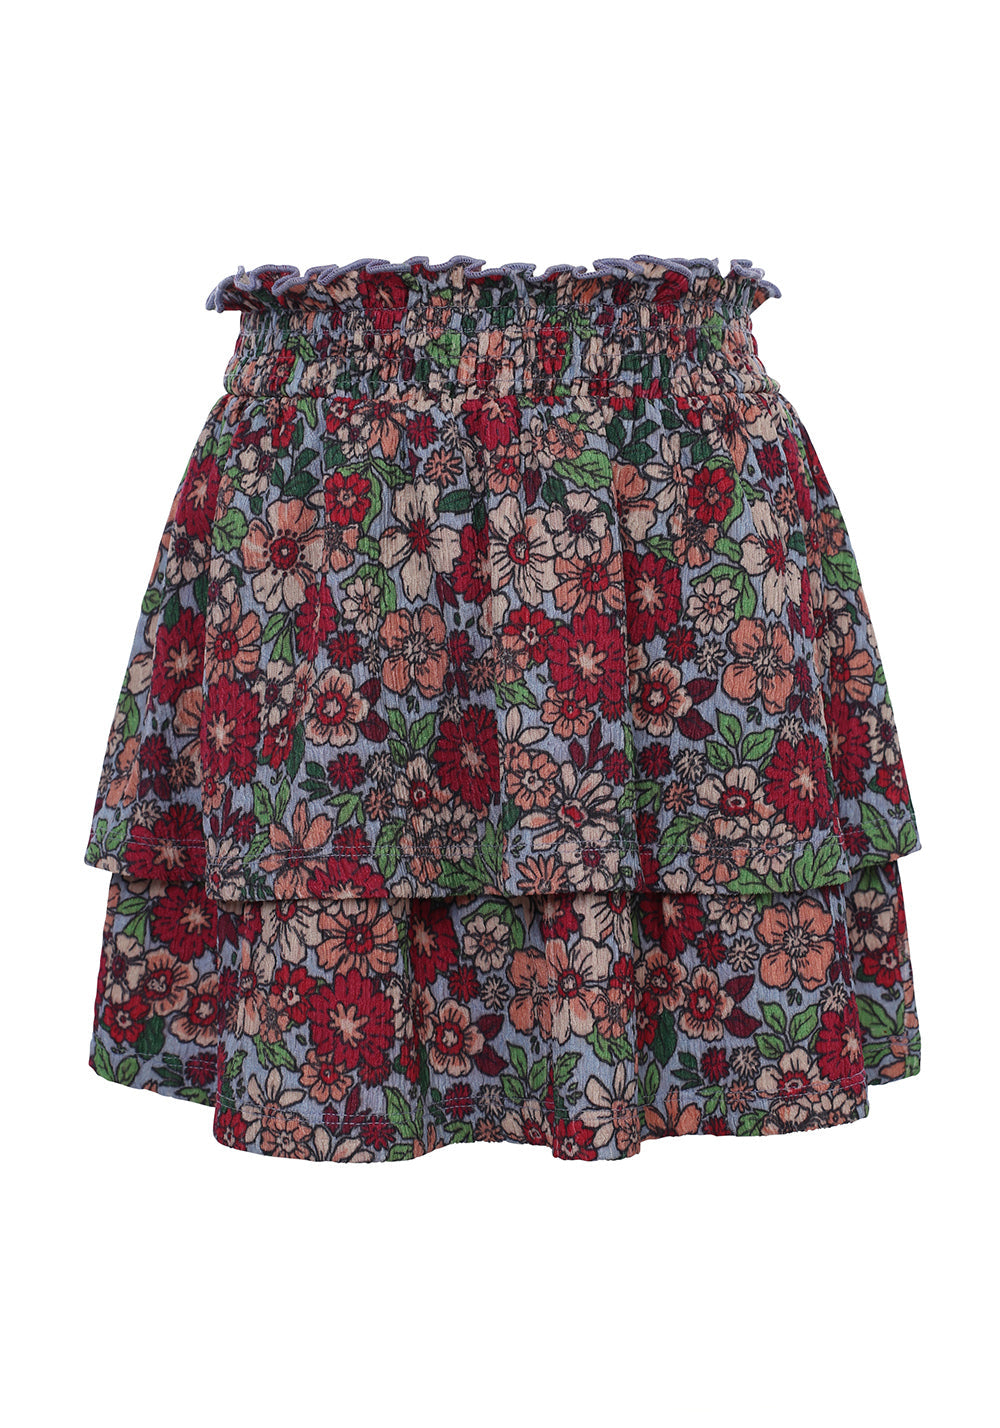 Meisjes Fancy Skirt van LOOXS Little in de kleur FLOWERFIELD in maat 128.